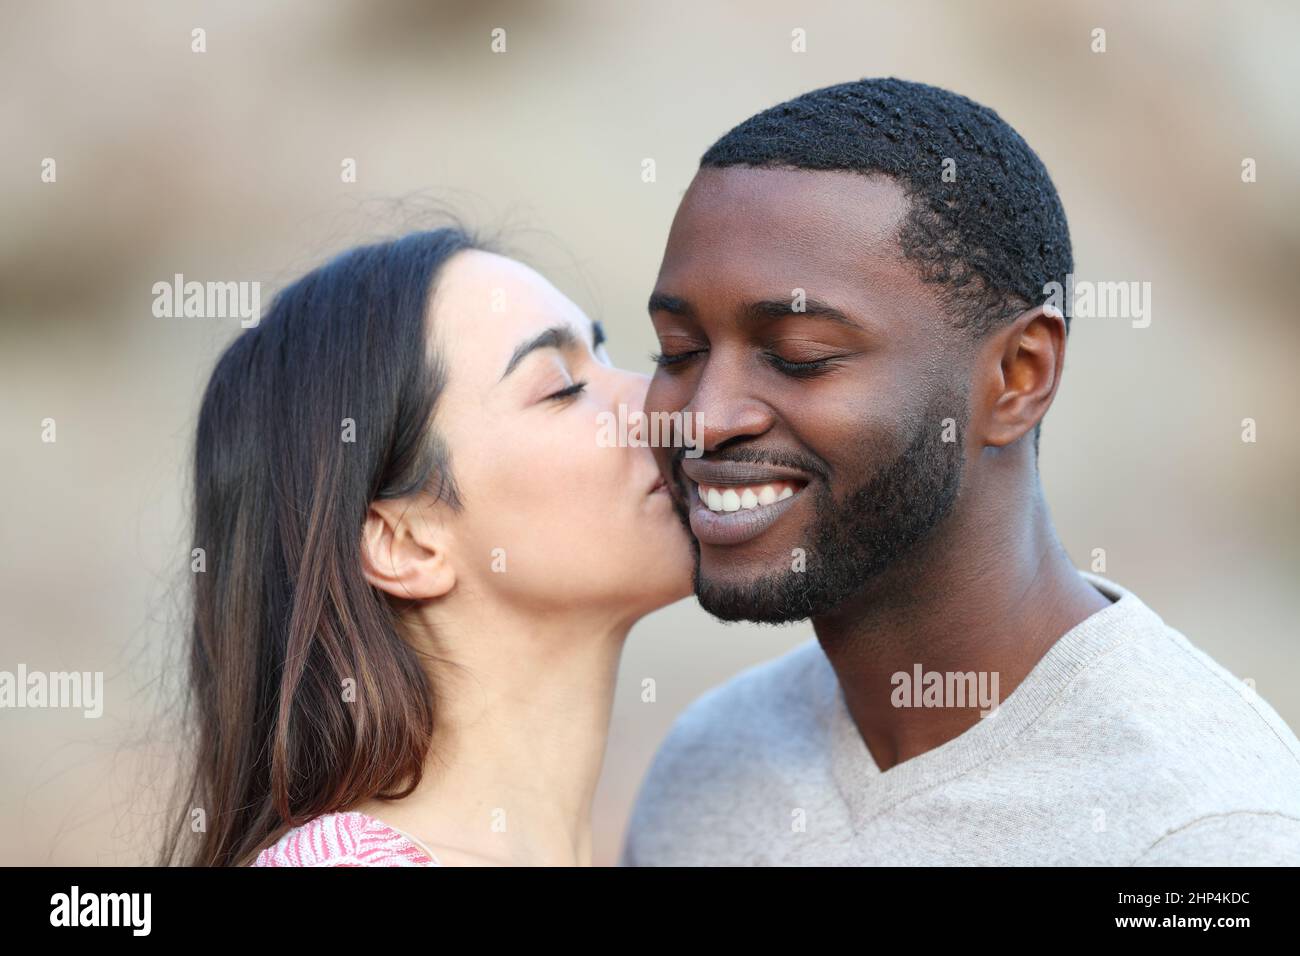 Bonne femme caucasienne embrassant sur la joue un homme à la peau noire Banque D'Images